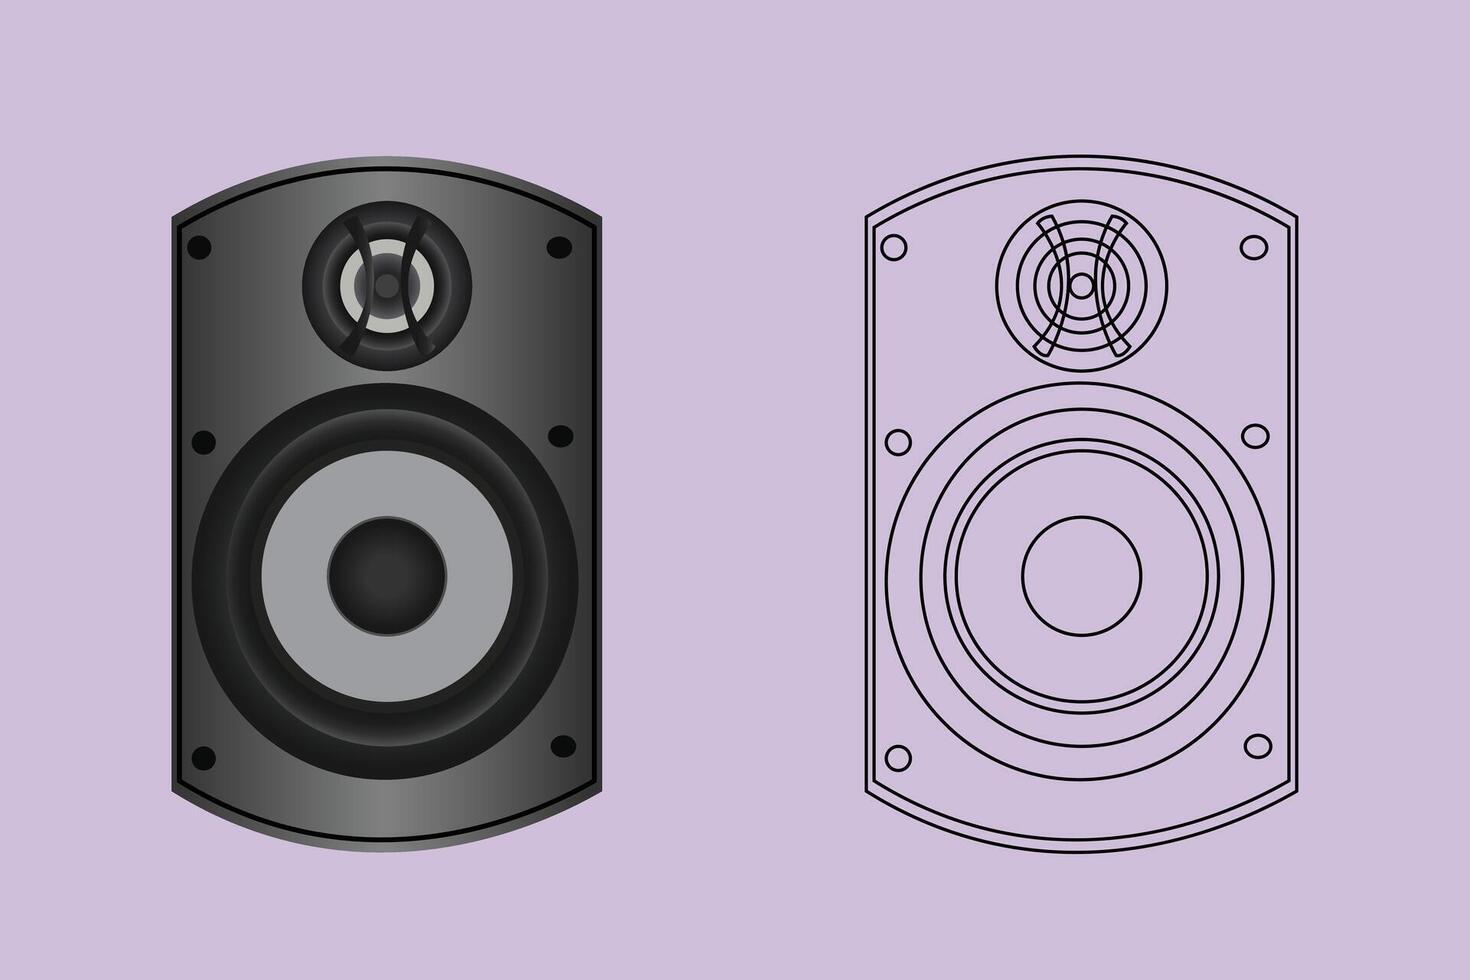 altavoz música bajo. sonido electrónico equipo icono vector ilustración